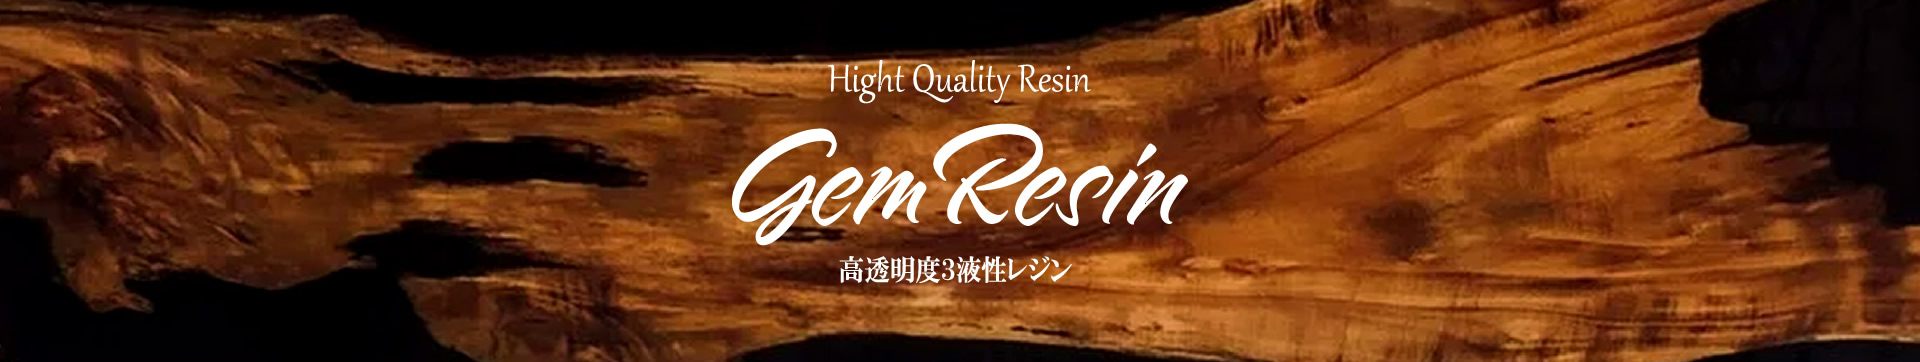 高透明度3液性エポキシレジン Gem Resin (ジェムレジン)